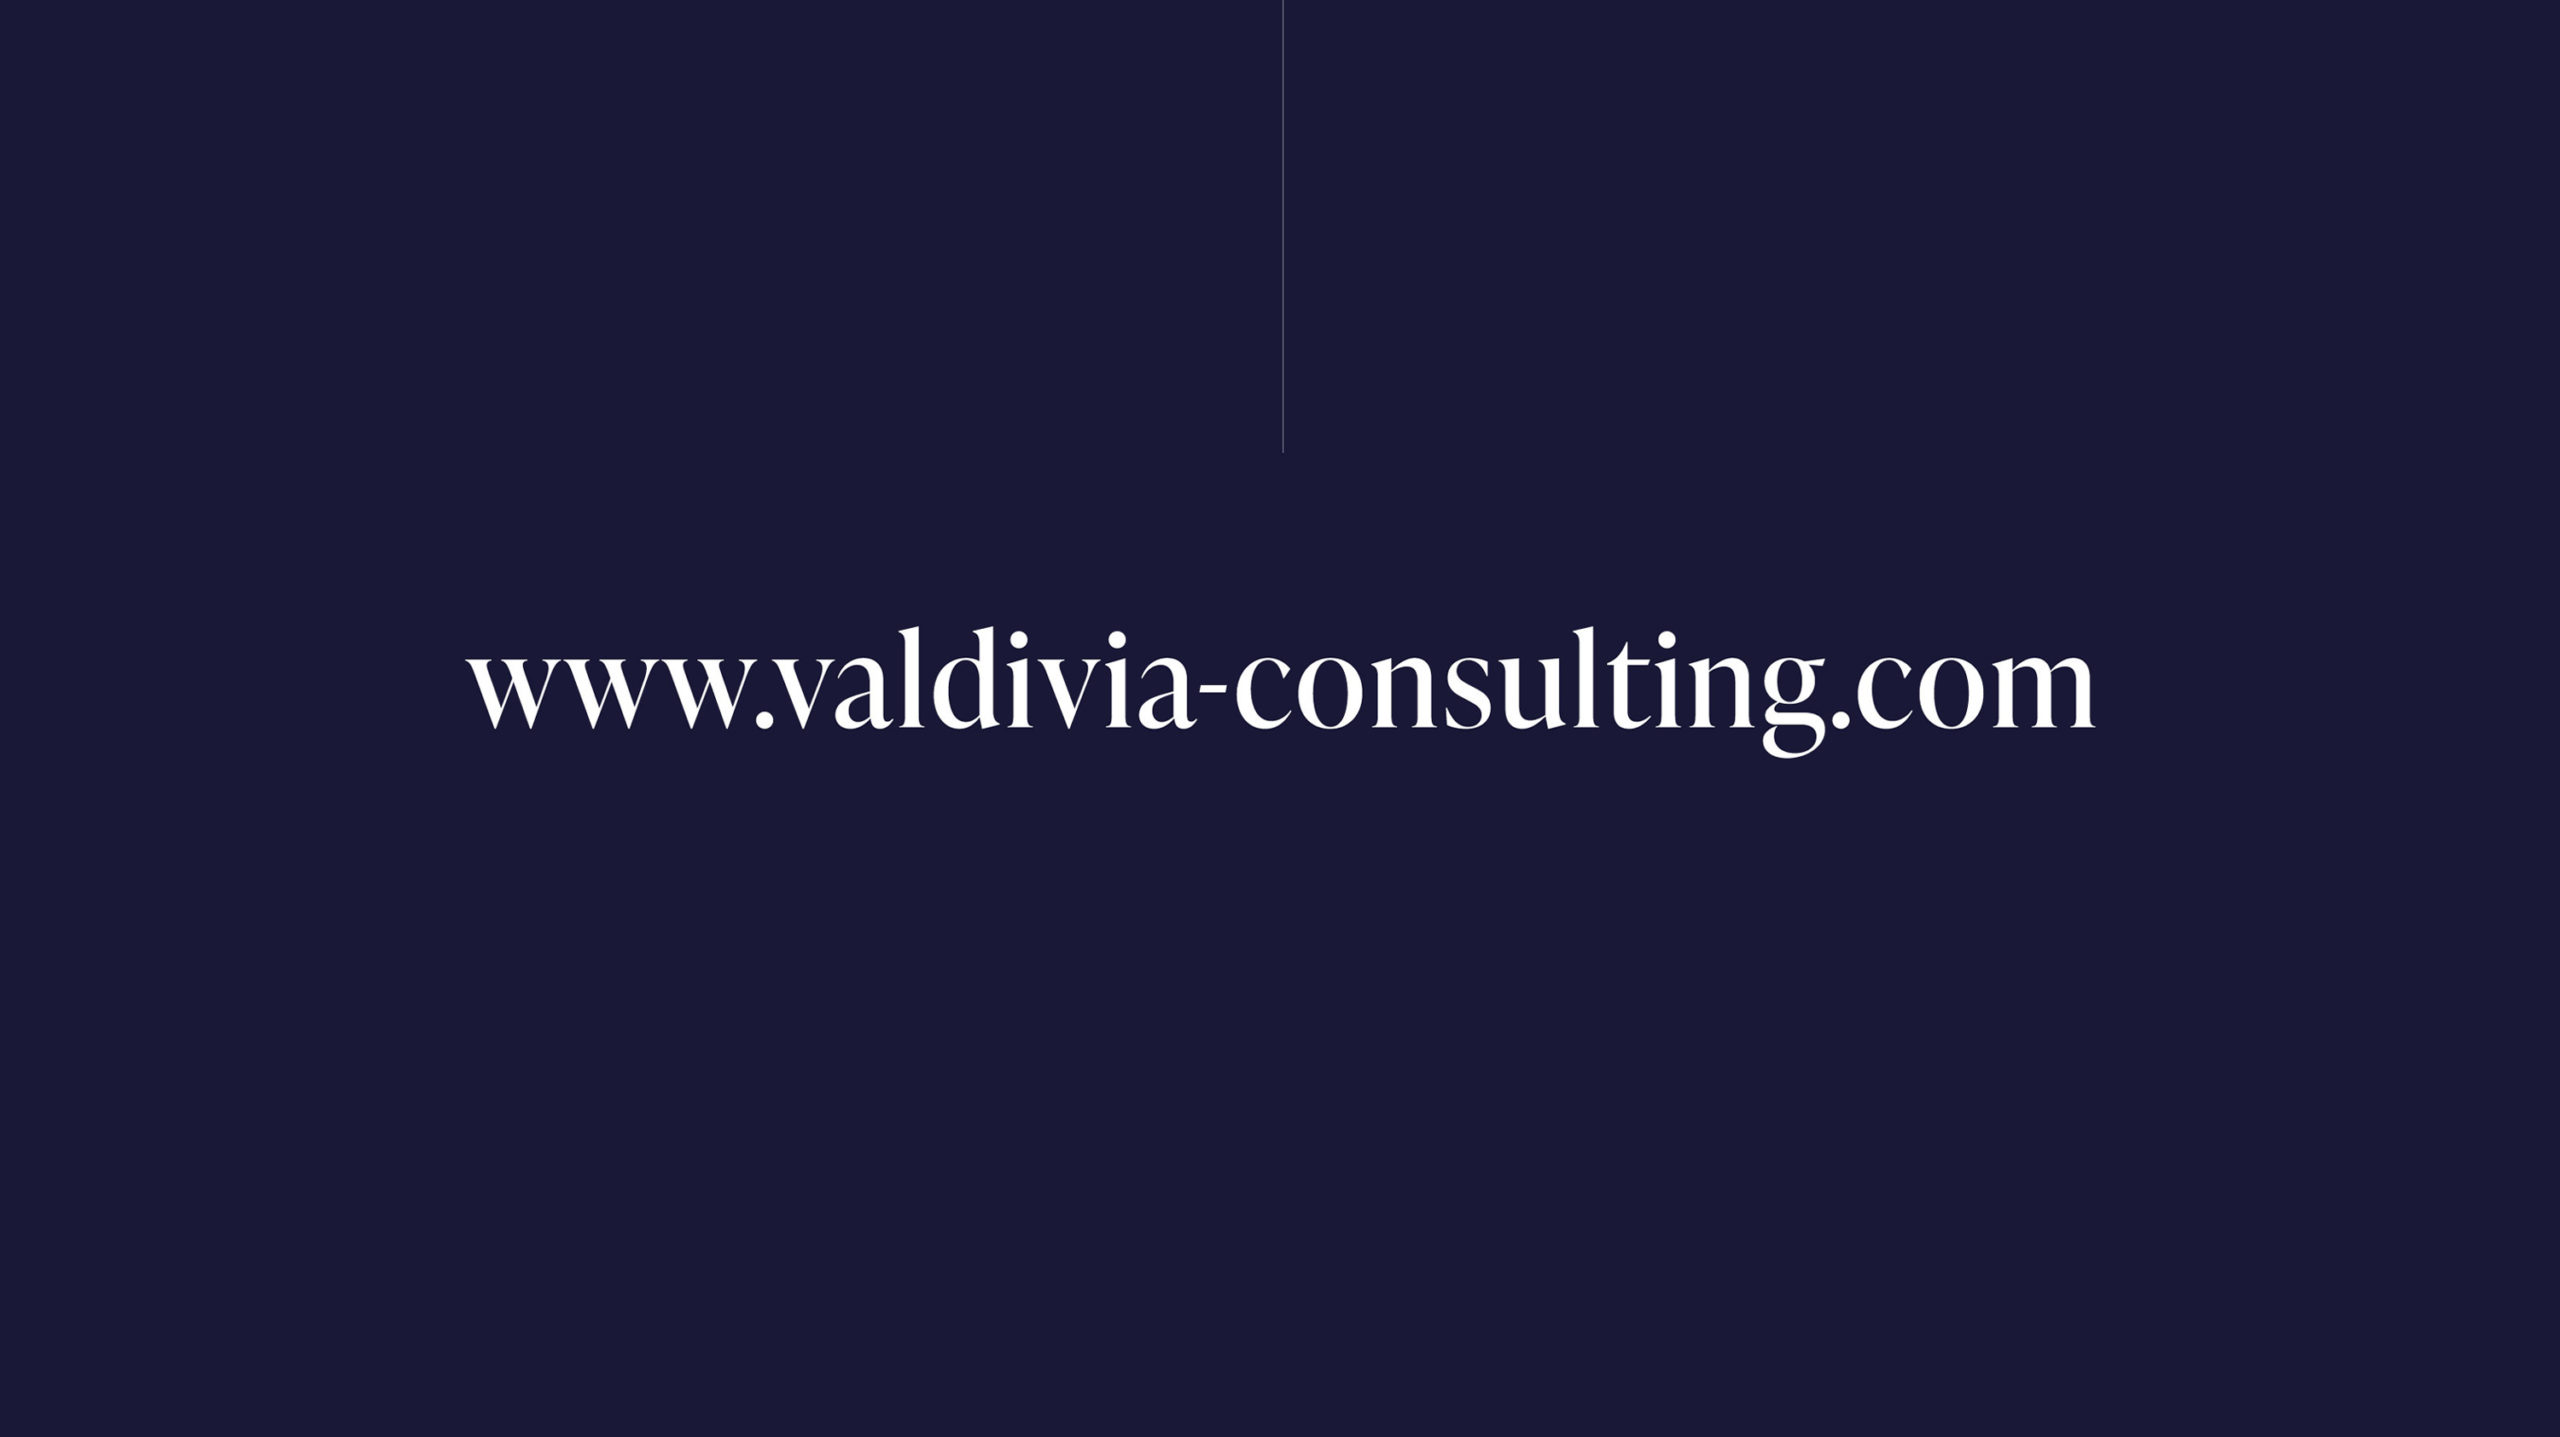 VALDIVIA Consulting Corporate Design, Corporate Design Agentur, Designagentur Frankfurt, Grafikdesign, Logodesign, Branding, Webdesign